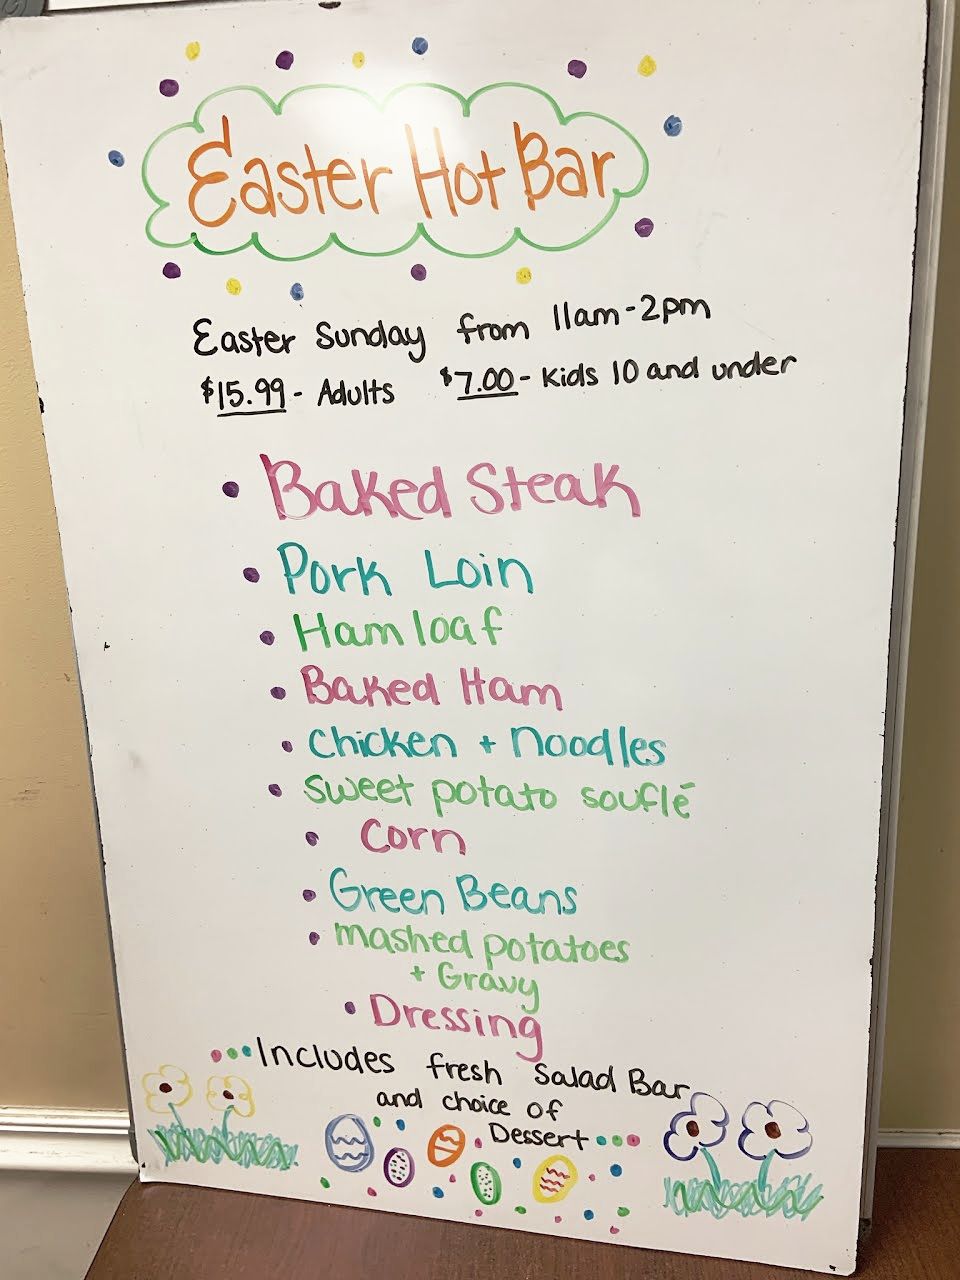 Easter Hot Bar Buffet